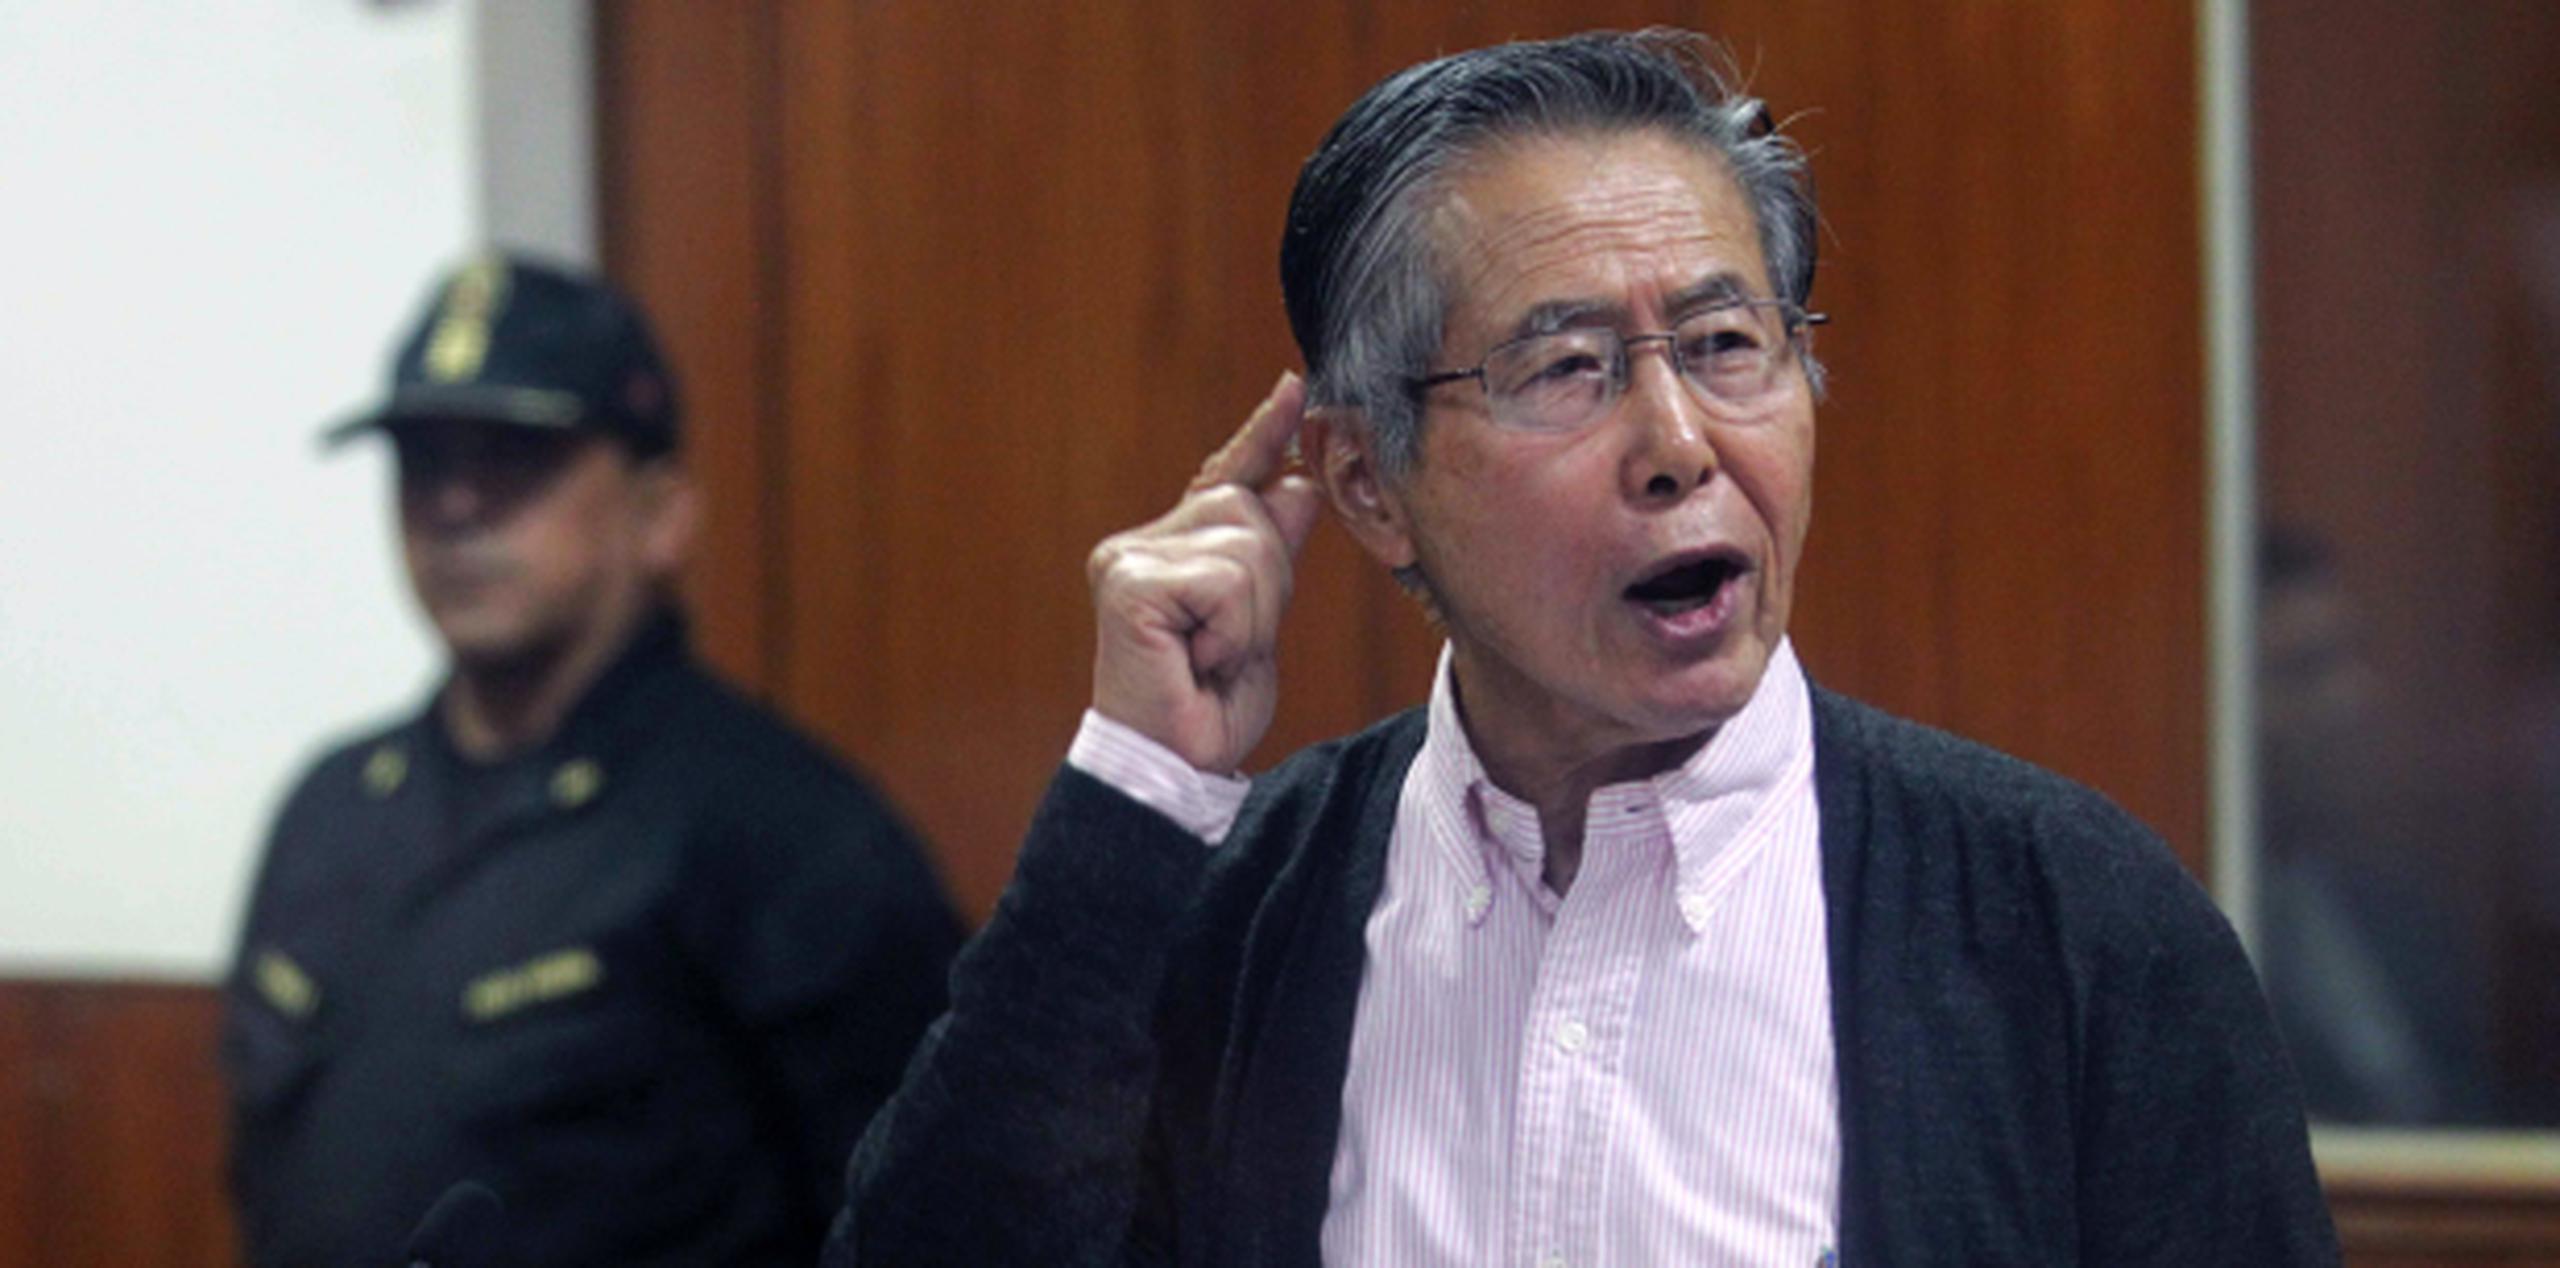 En 2009 Fujimori fue condenado por el asesinato y lesiones graves de 25 personas así como por el secuestro agravado de otras dos personas a manos de un grupo de militares que actuaron bajo su conocimiento. (EFE / Ernesto Arias)